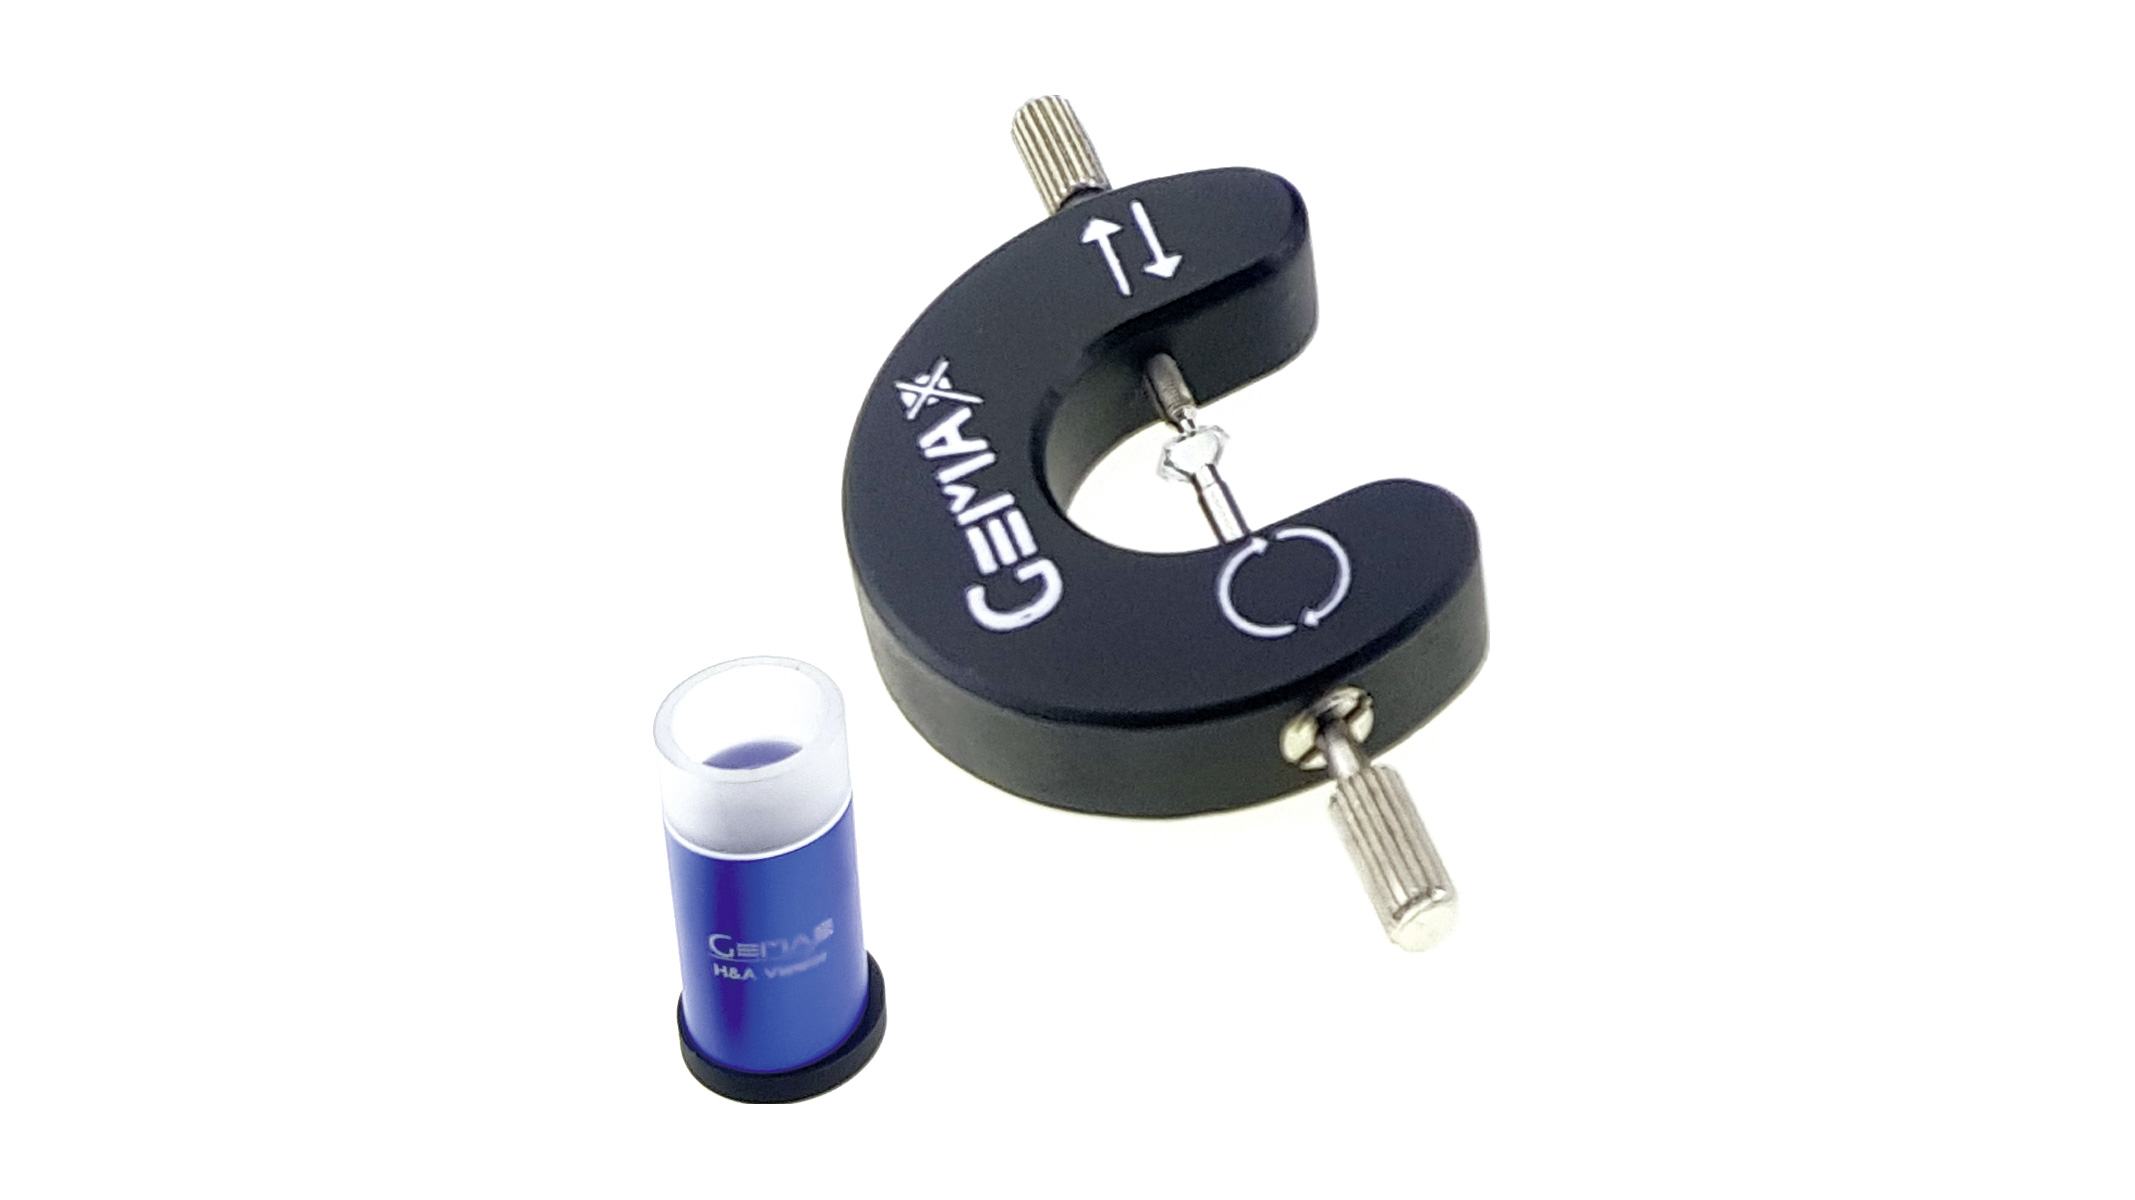 Gemax Pro-II microscope numérique, y compris logiciel, carte SD, prise pour EU et UK